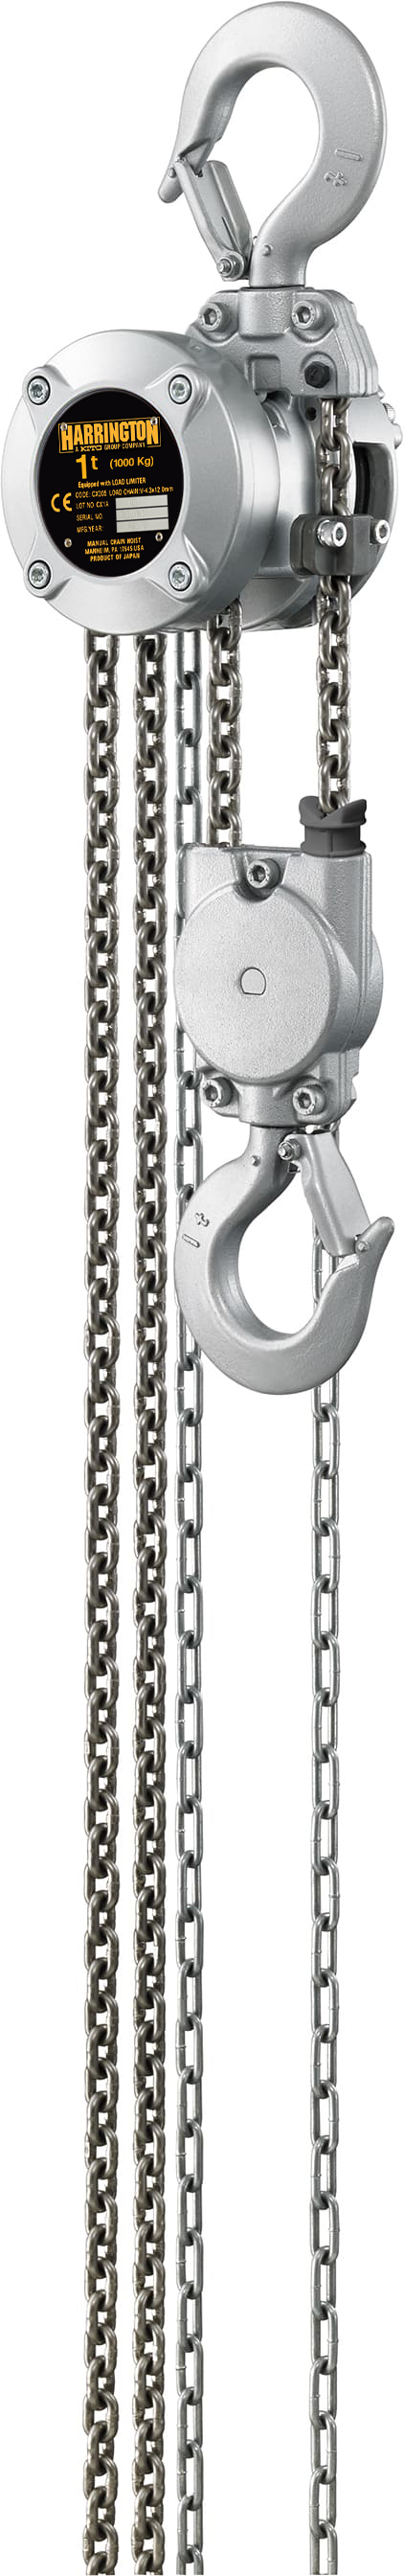 Harrington Hoists, Inc. 1 Ton Mini Hand Chain Hoist